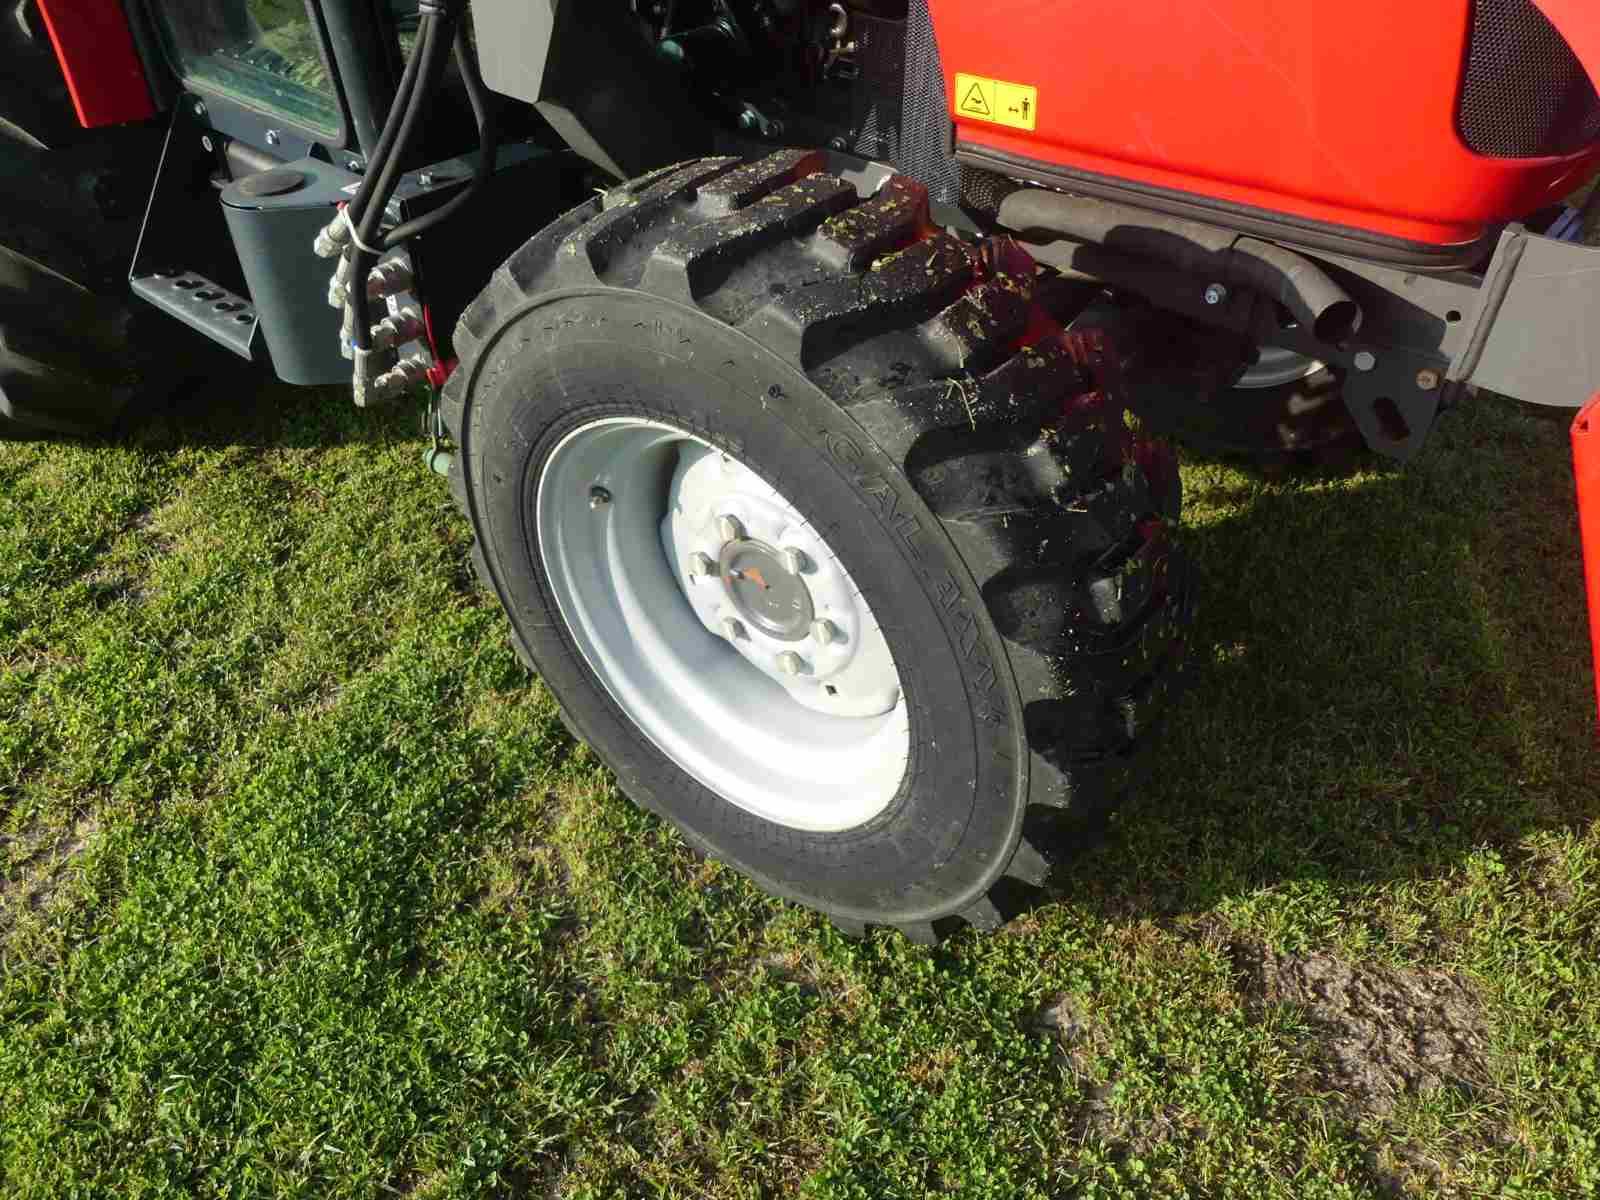 Massey Ferguson 1740M MFWD Tractor, s/n 35115: Cab, DL125 Loader, w/ Warran